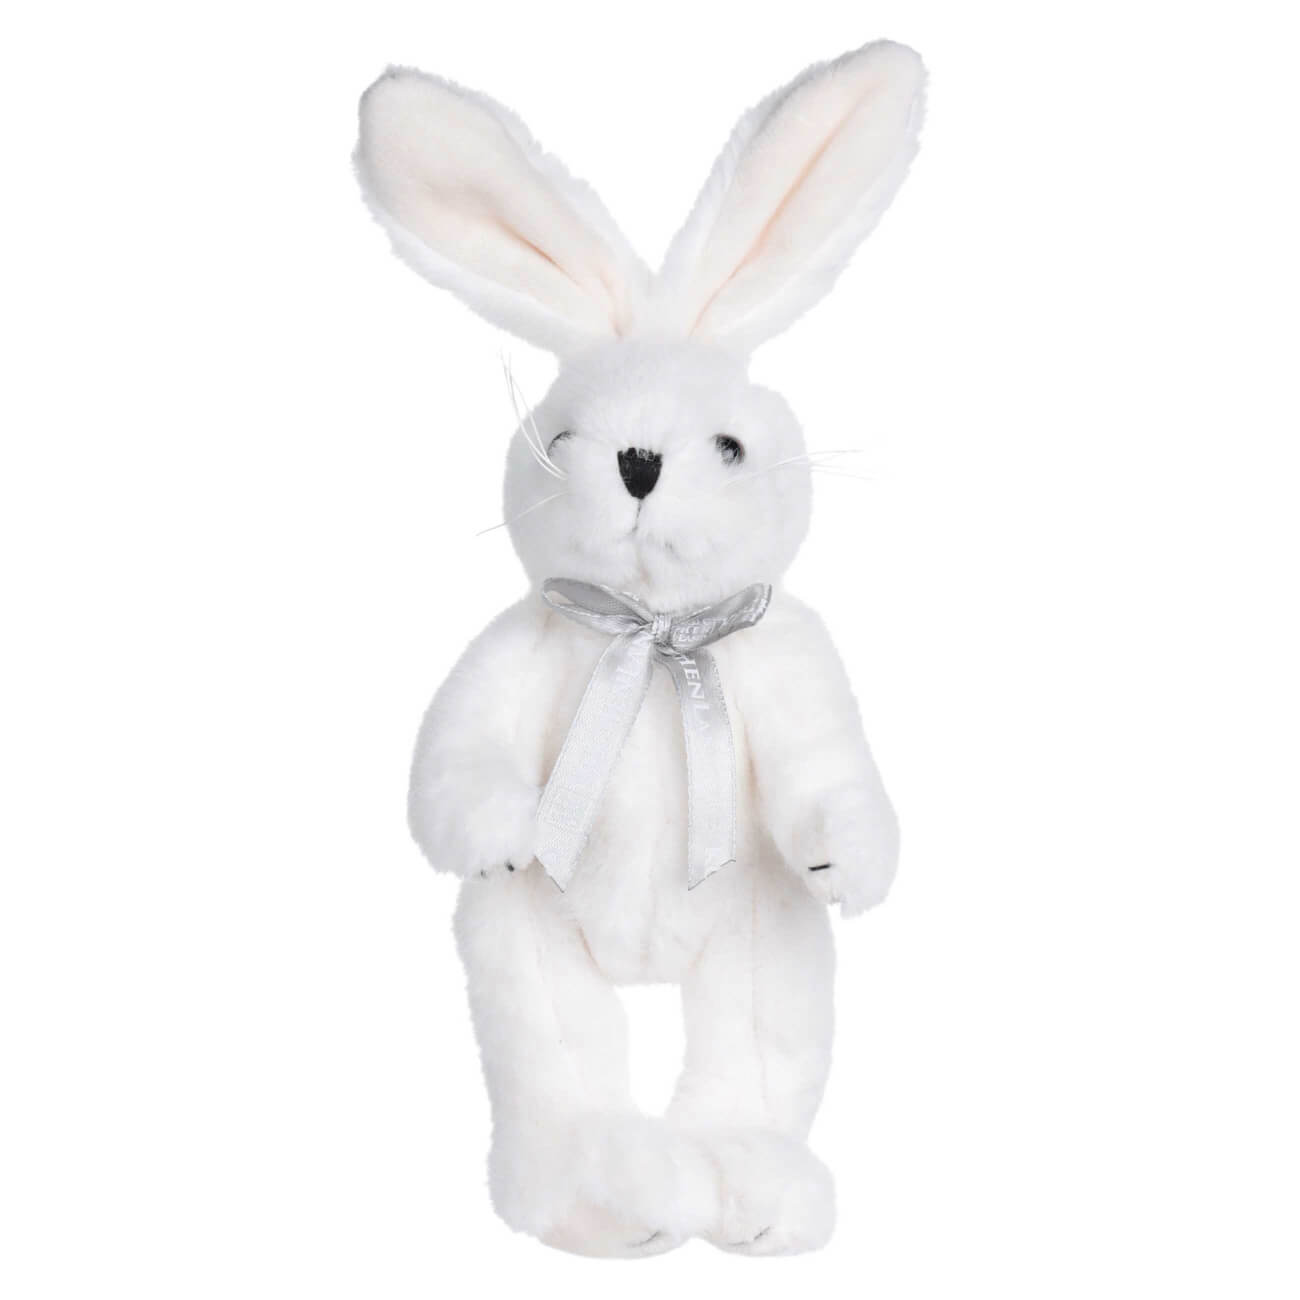 Игрушка, 20 см, мягкая, с подвижными лапами, полиэстер, белая, Кролик, Rabbit toy изображение № 1